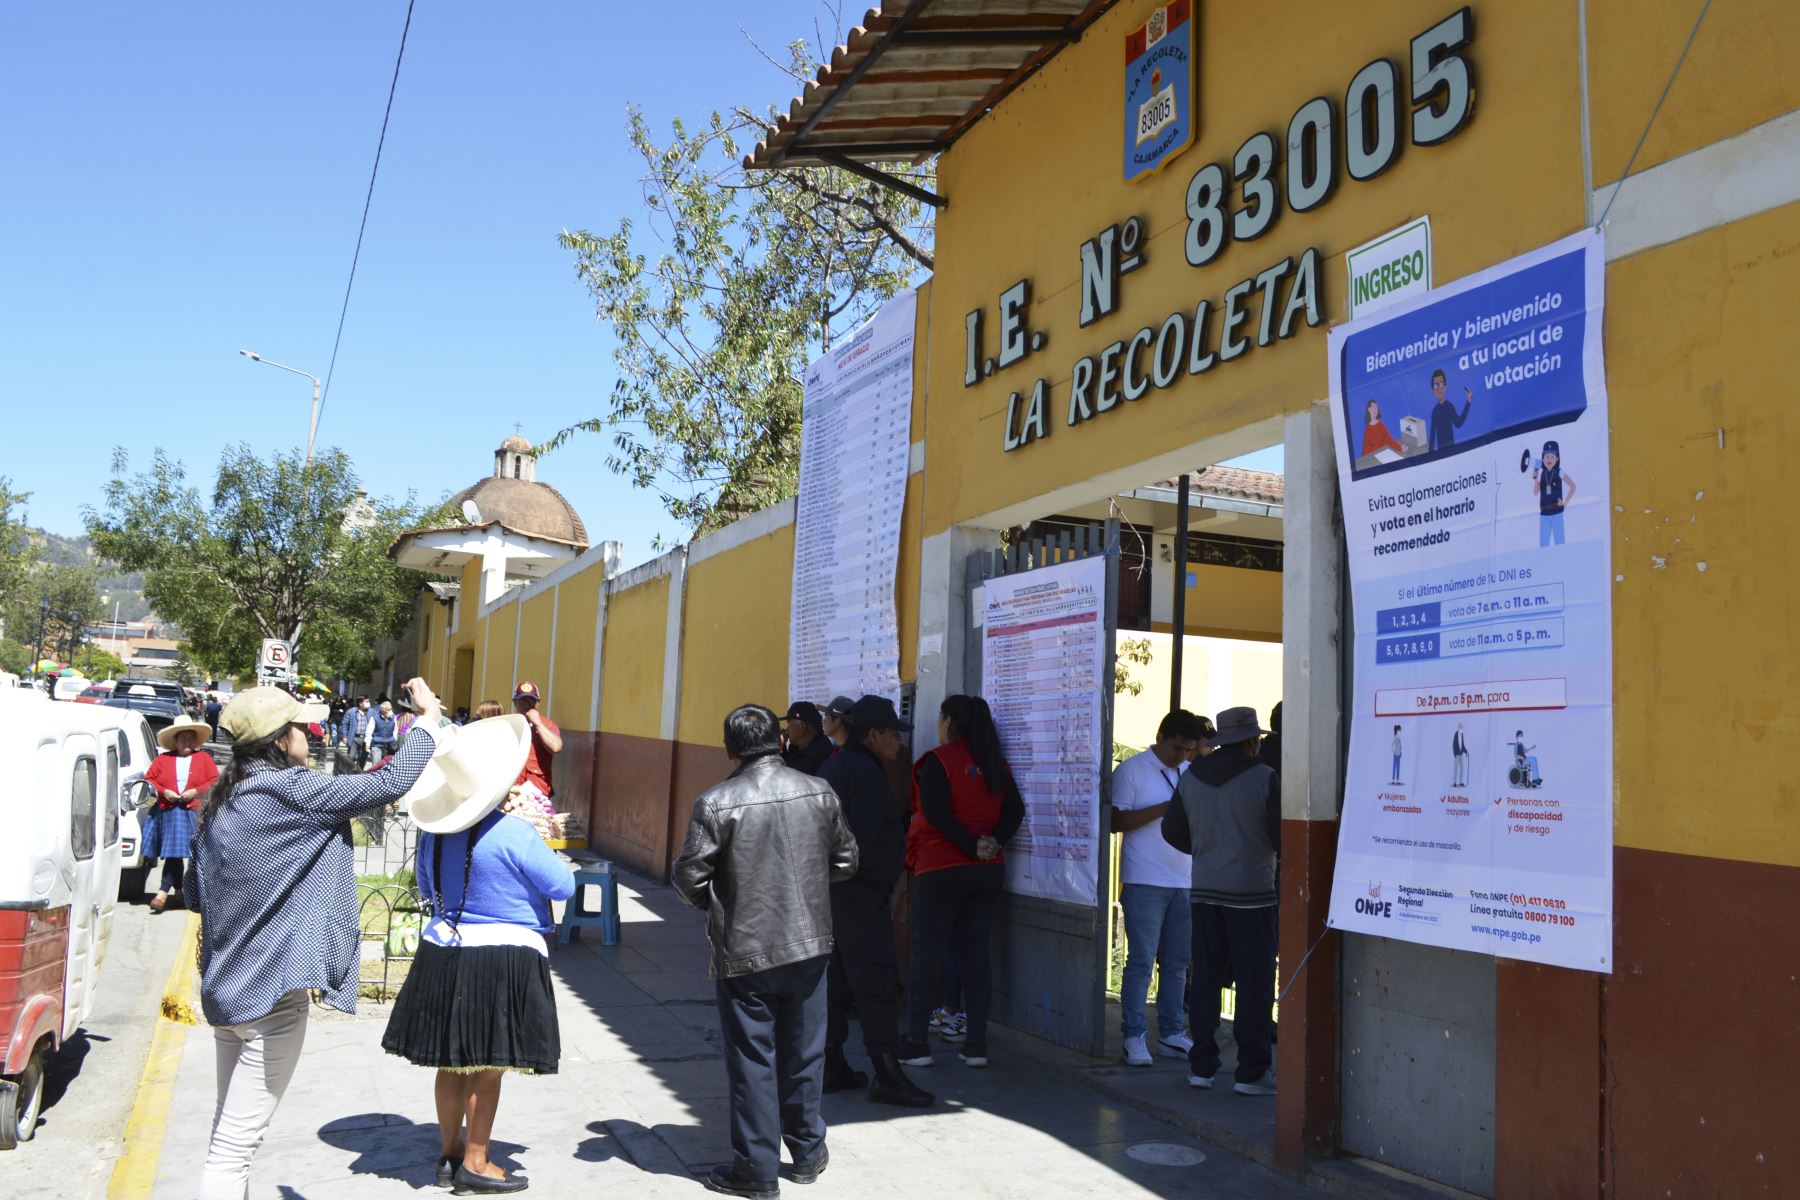 Desarrollo de elecciones regionales en Cajamarca.

Foto: ANDINA/Eduard Lozano